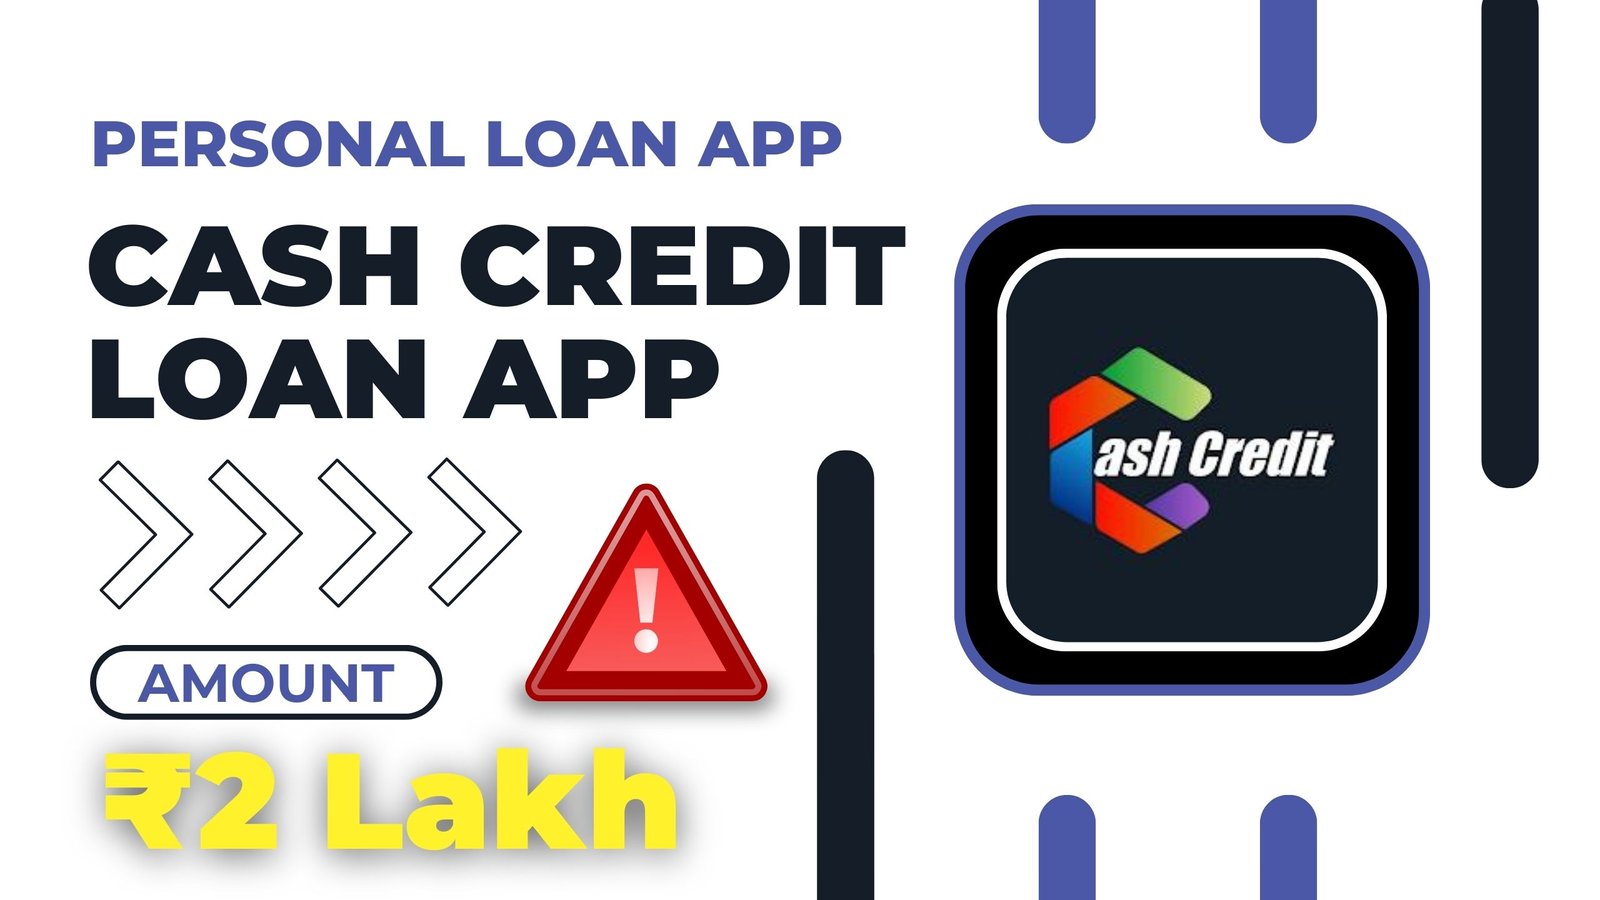 Cash Credit Loan App Loan Amount